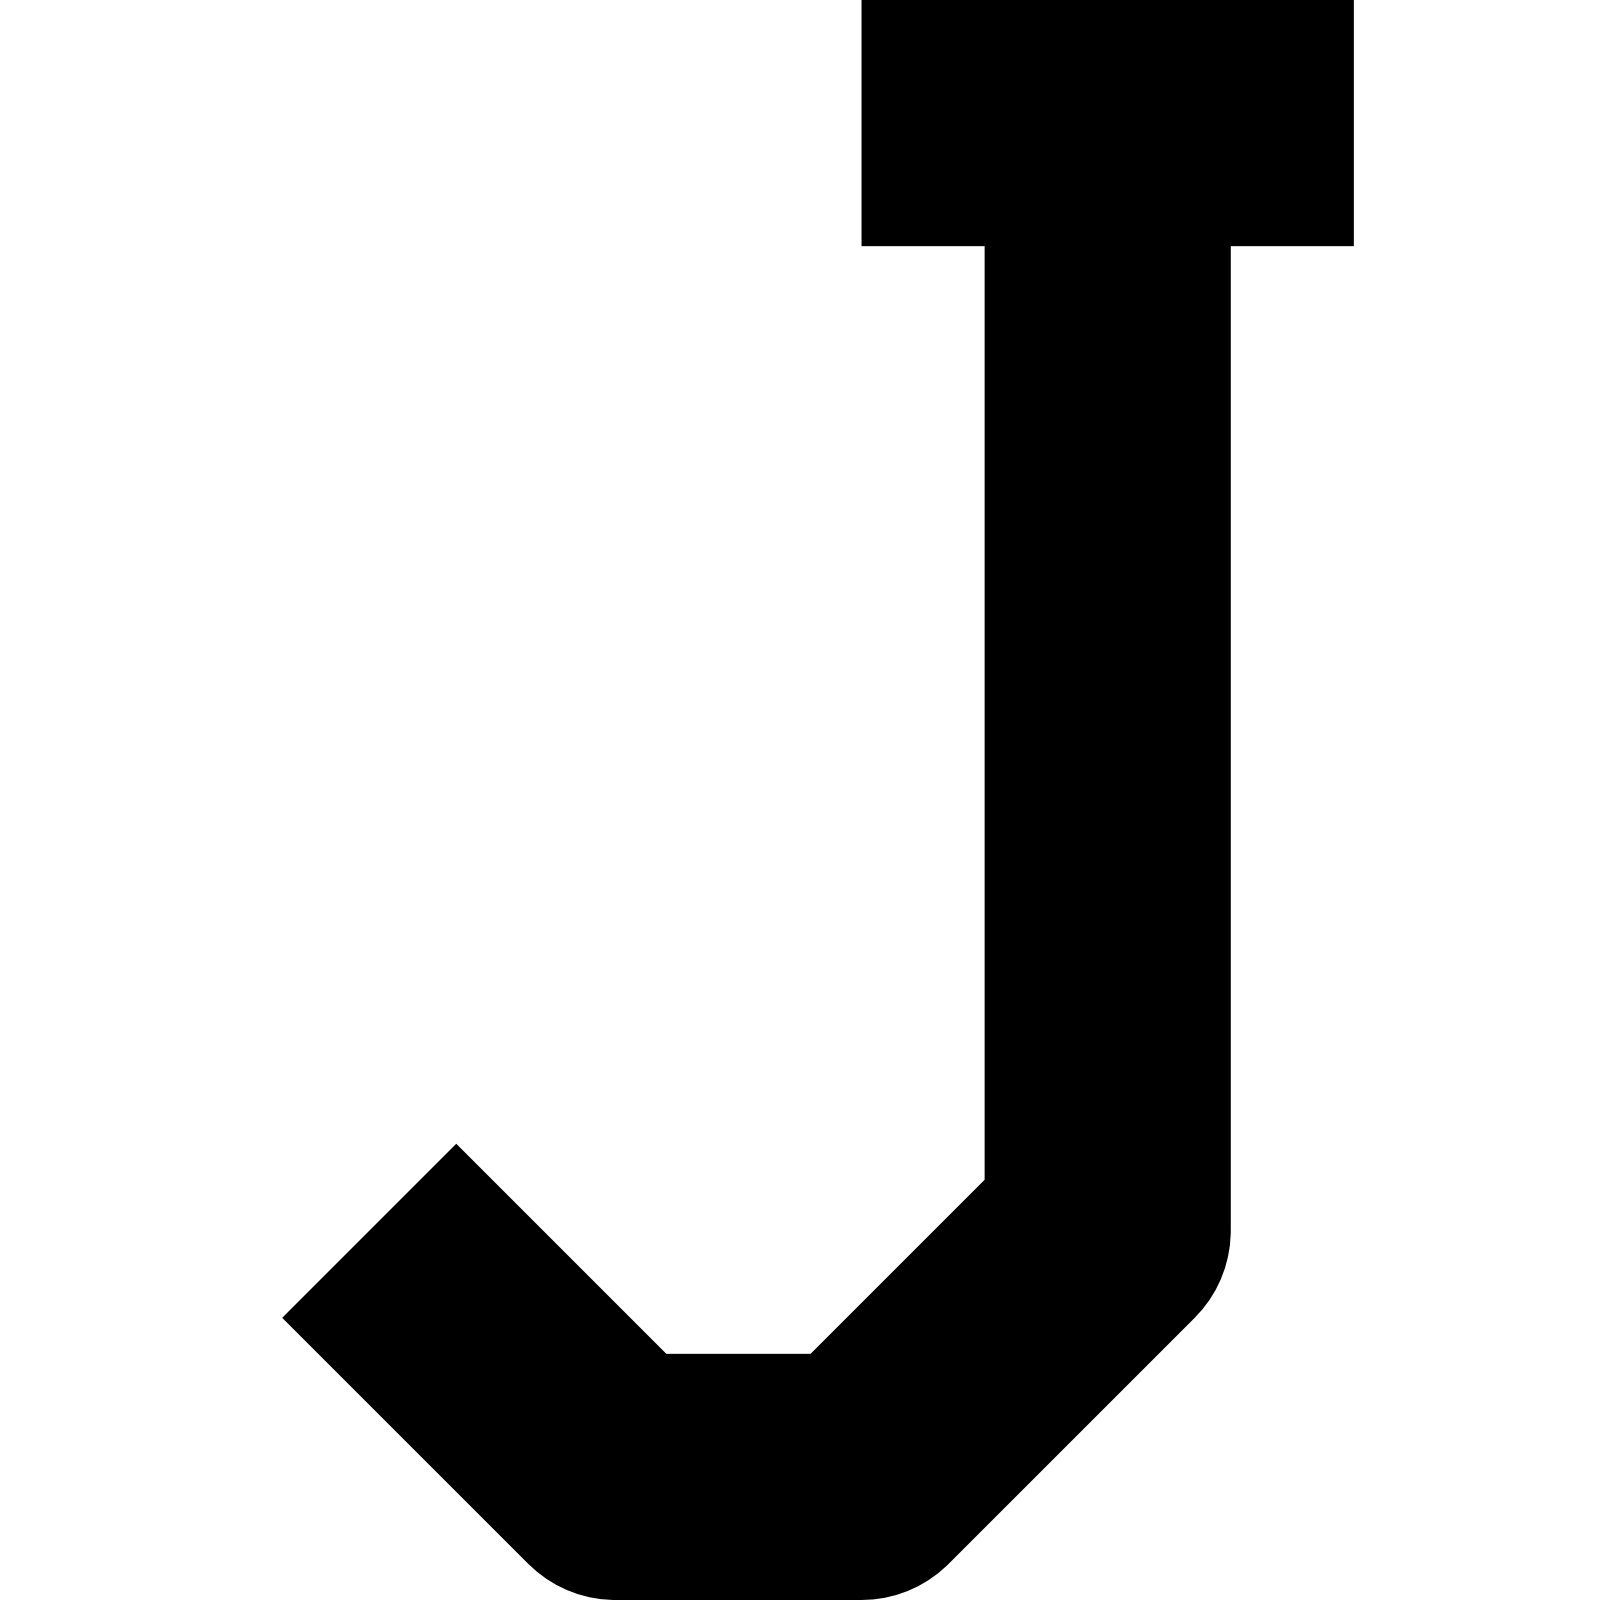 Буква J PNG